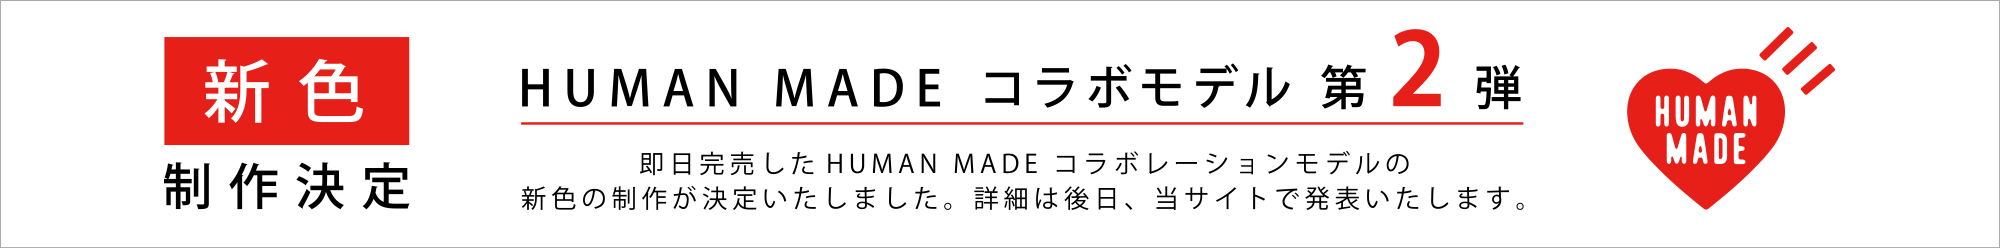 アーユル・チェアー × HUMAN MADE 特別コラボレーションモデル